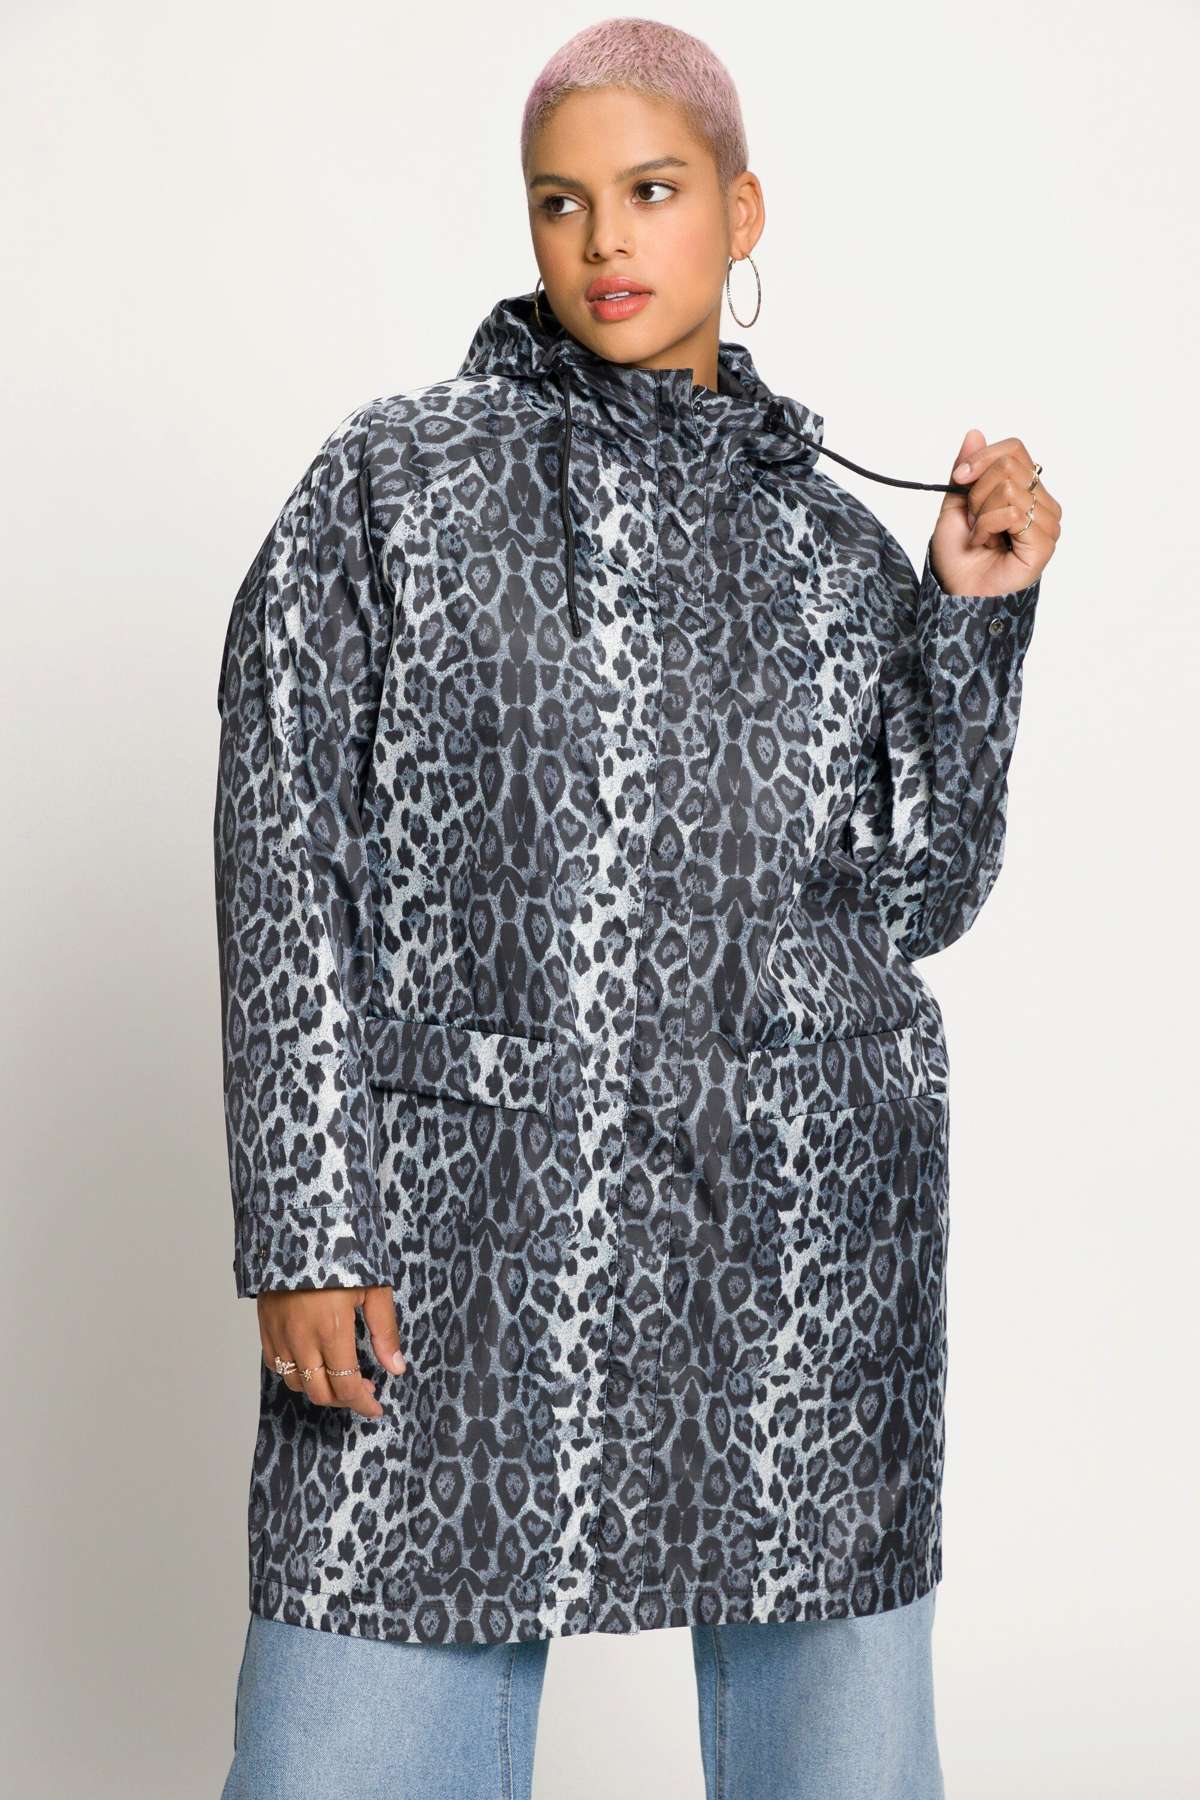 Зимнее пальто плащ непромокаемый с капюшоном с леопардовым принтом и застежкой-молнией